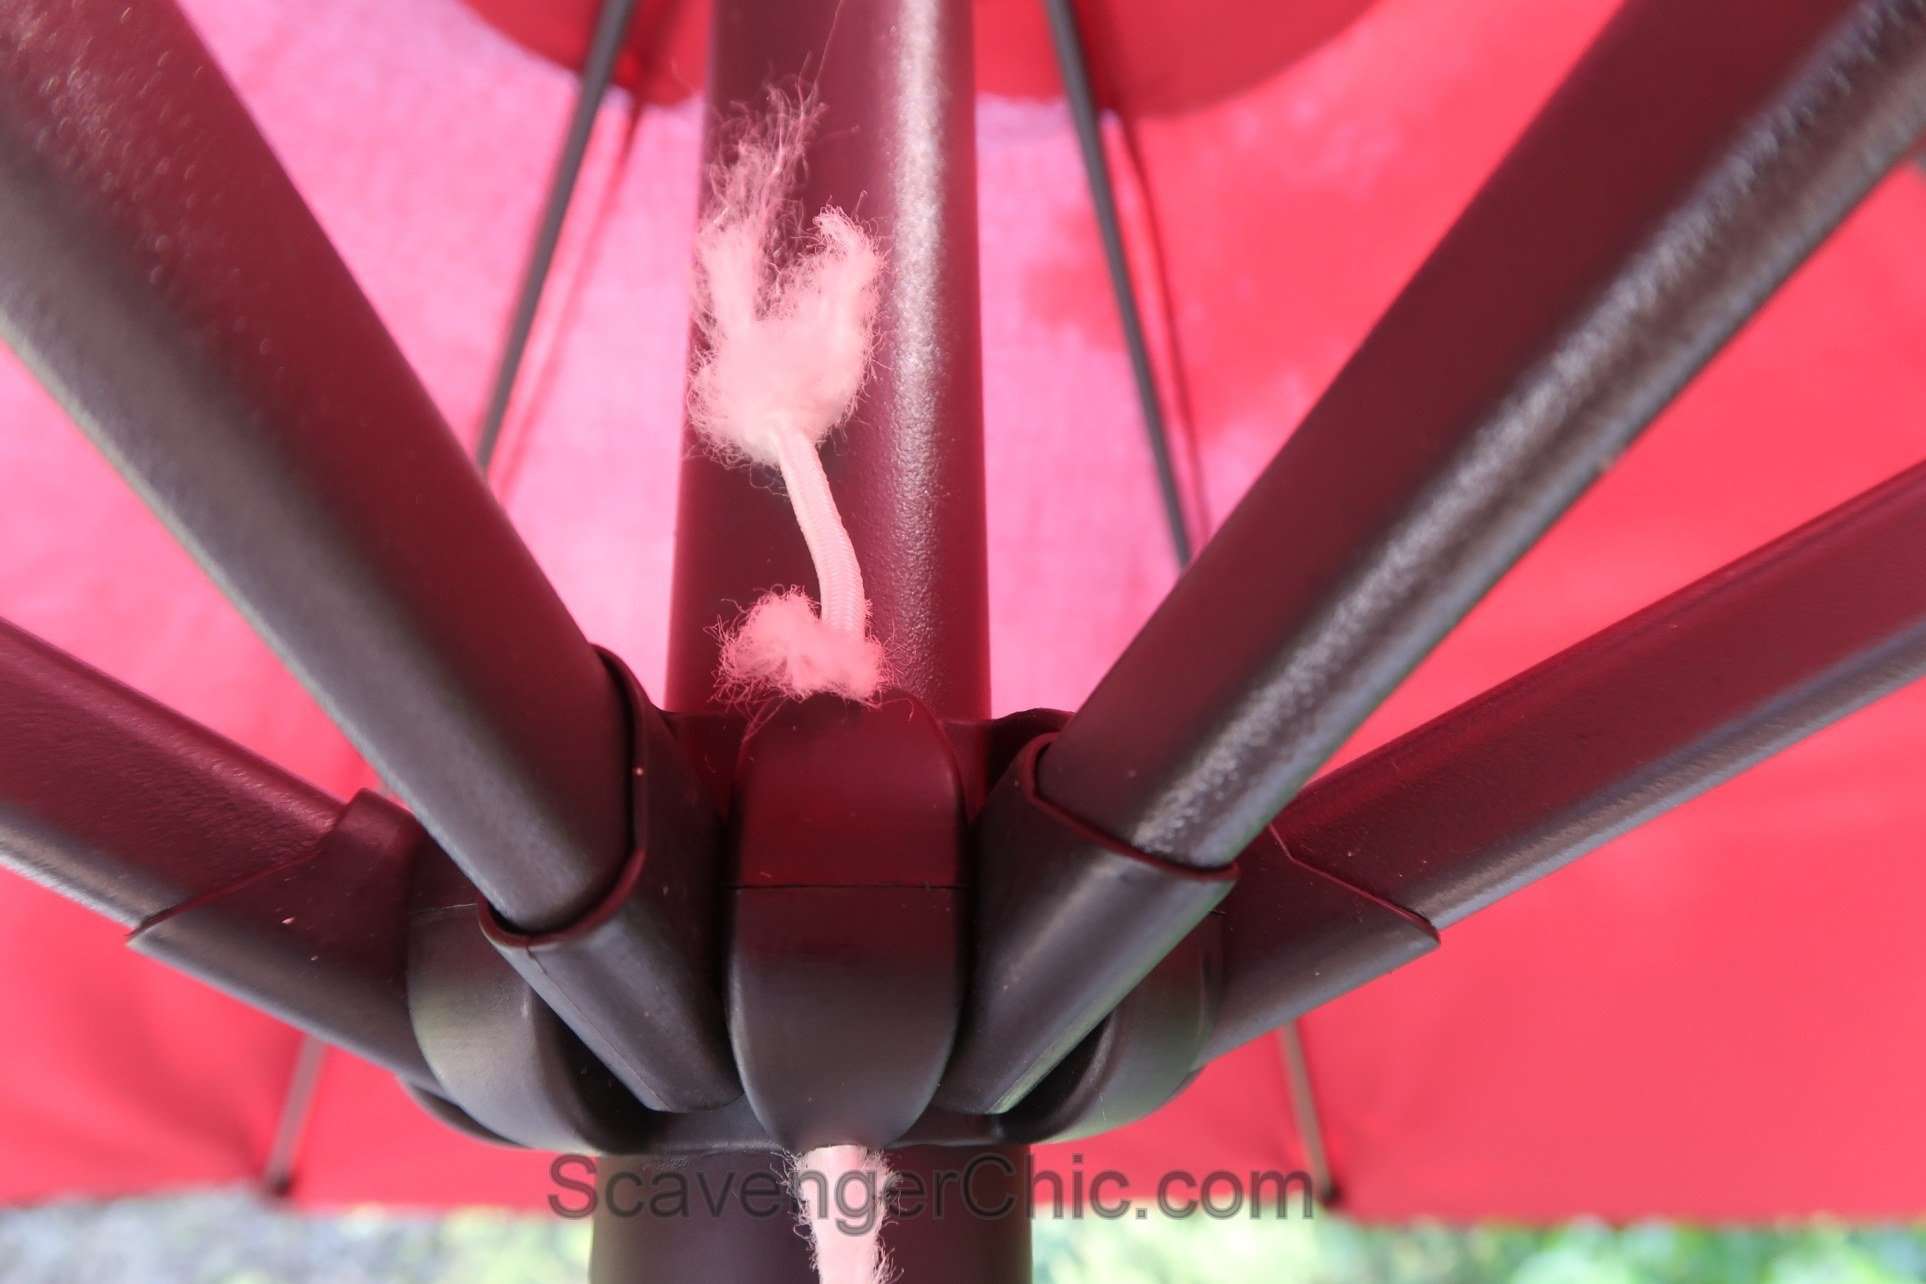 Easy Fix for Patio Umbrella Cord  Scavenger Chic